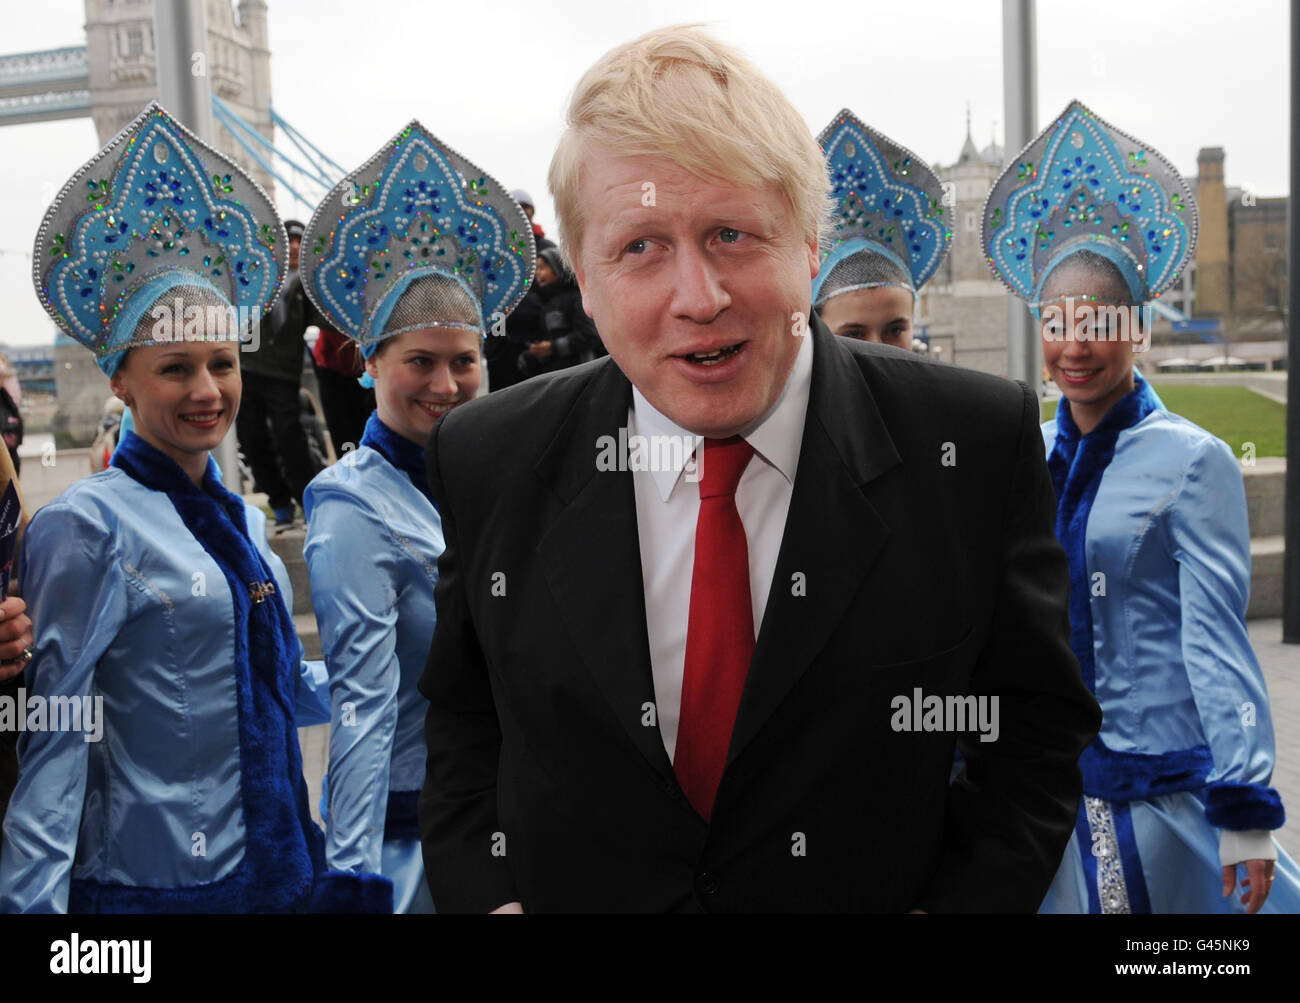 Le maire de Londres Boris Johnson rencontre des danseurs russes à l'hôtel de ville de Londres aujourd'hui lorsqu'il a lancé le festival folklorique russe de Maslenitsa qui aura lieu à Trafalgar Square le dimanche 6 mars et sera une célébration du patrimoine culturel russe. Banque D'Images